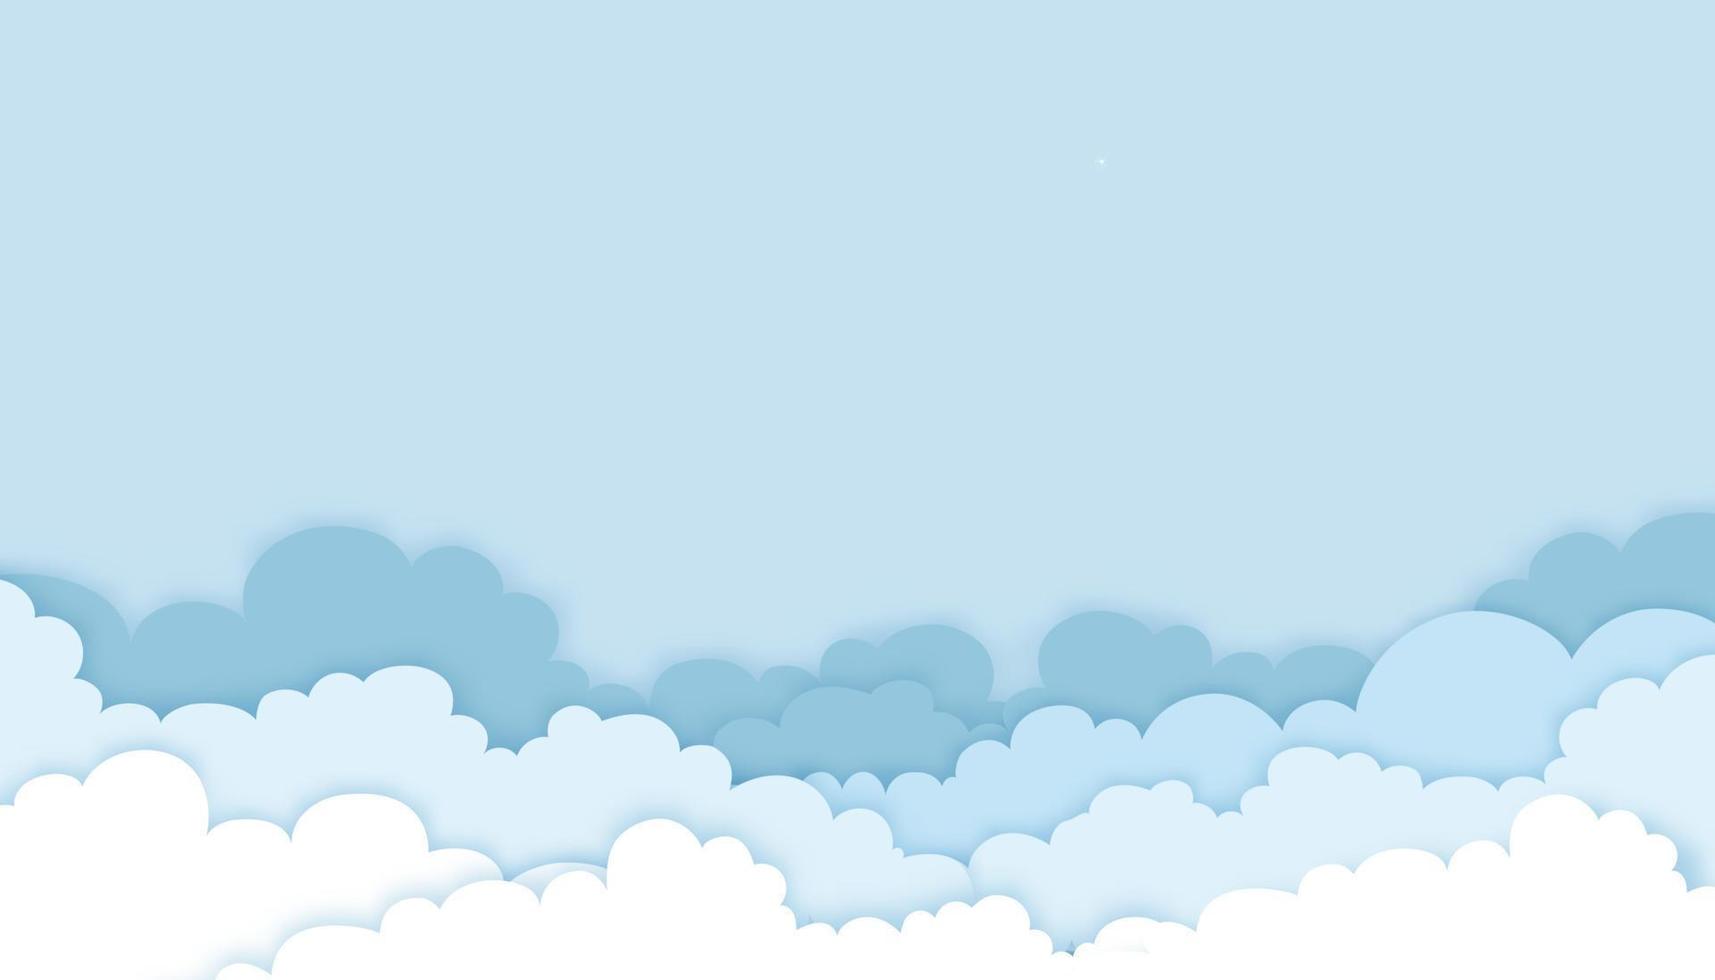 nuvola di origami con sfondo azzurro del cielo, illustrazione vettoriale strati di cloudscape stile artistico tagliato su carta 3d con spazio di copia per il testo. banner orizzontale per la vendita primaverile o la stagione estiva